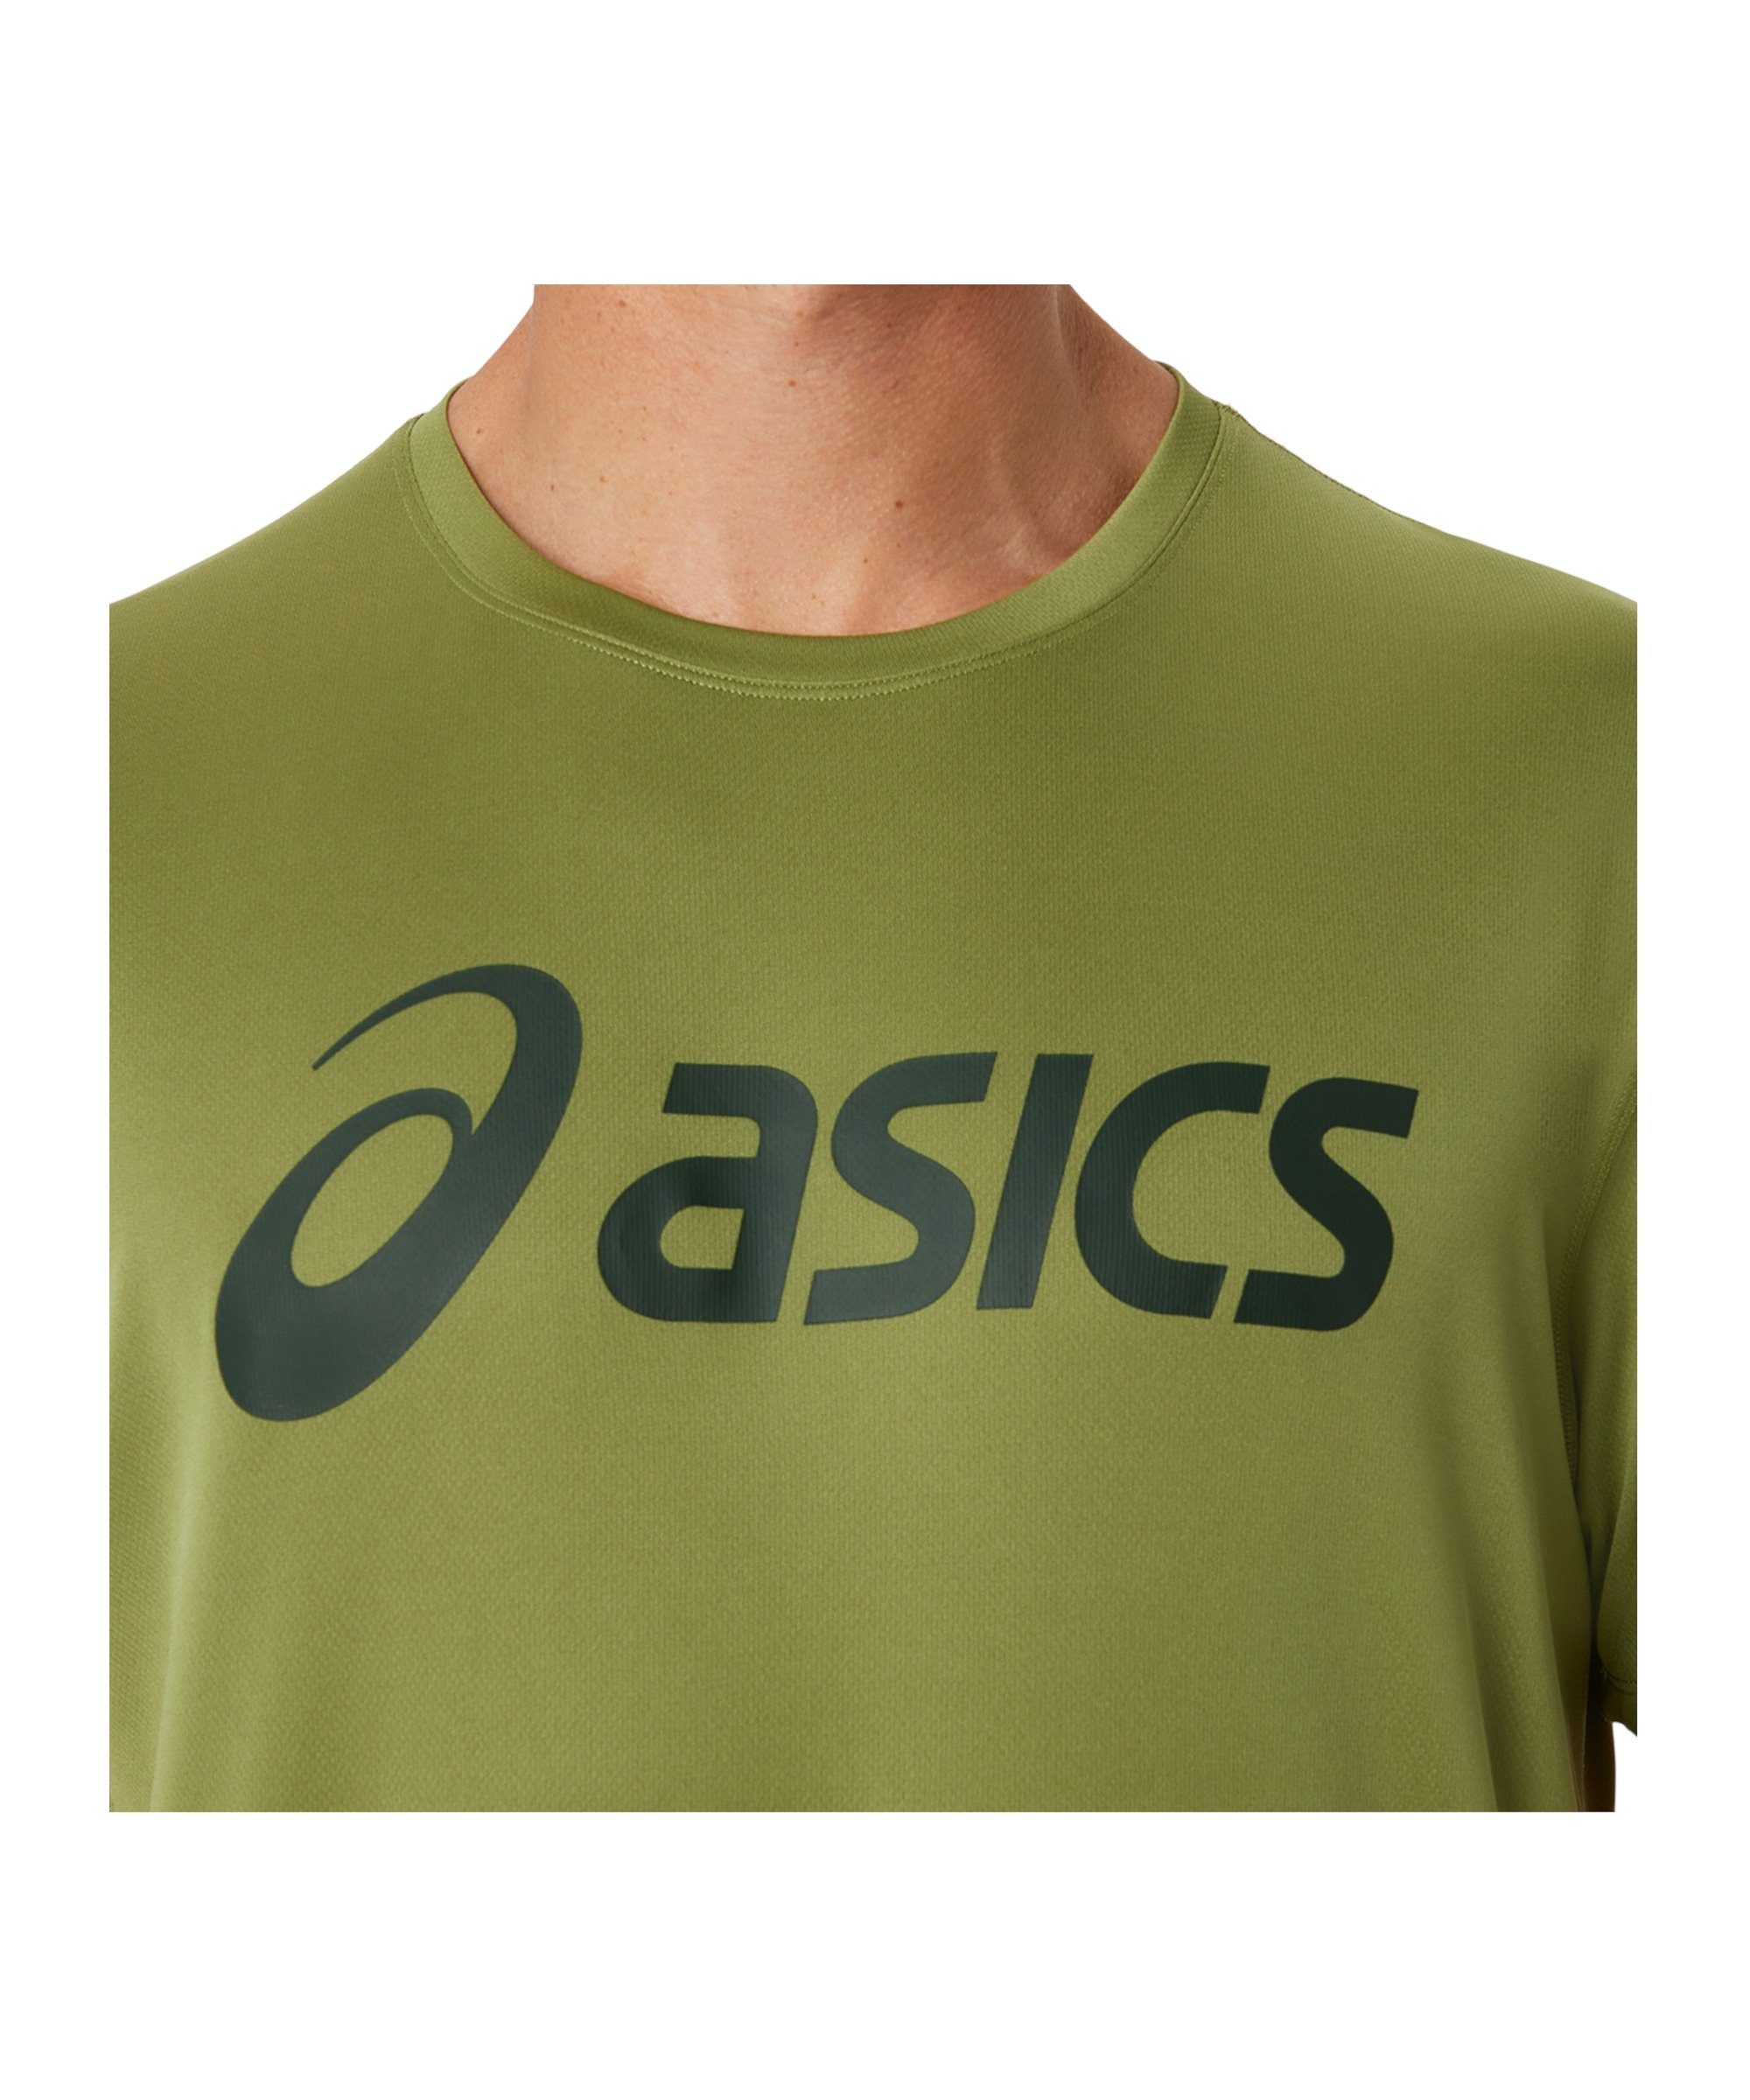 Asics T-Shirt Core T-Shirt default gruen